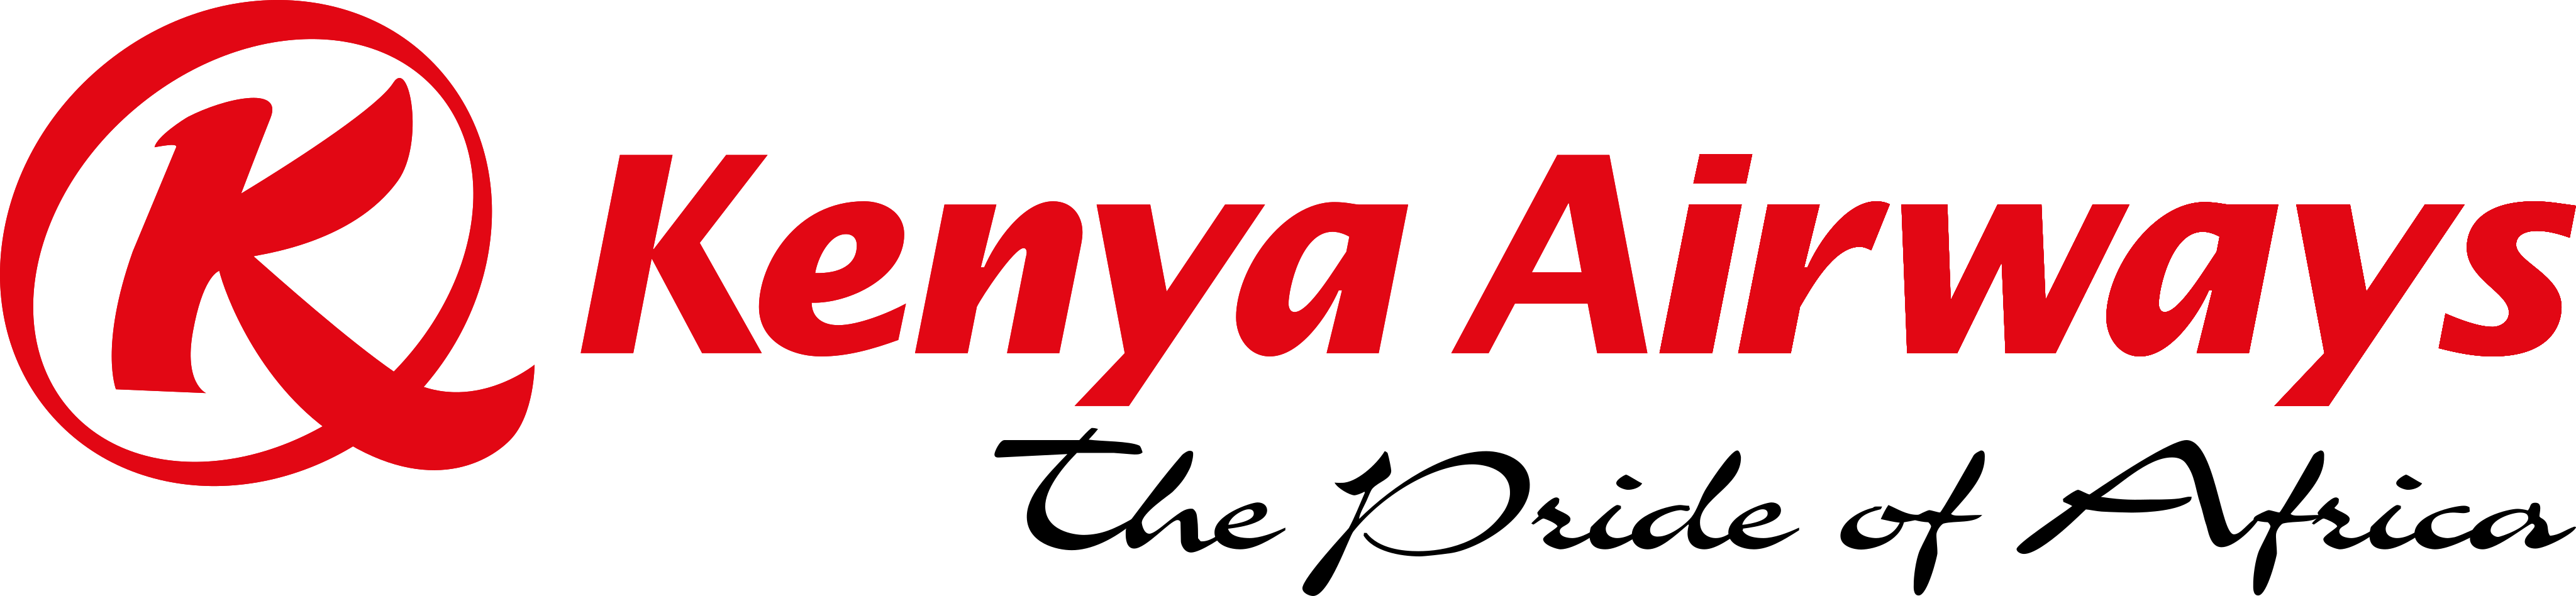 kenya airways logo - Kenya Airways Logo